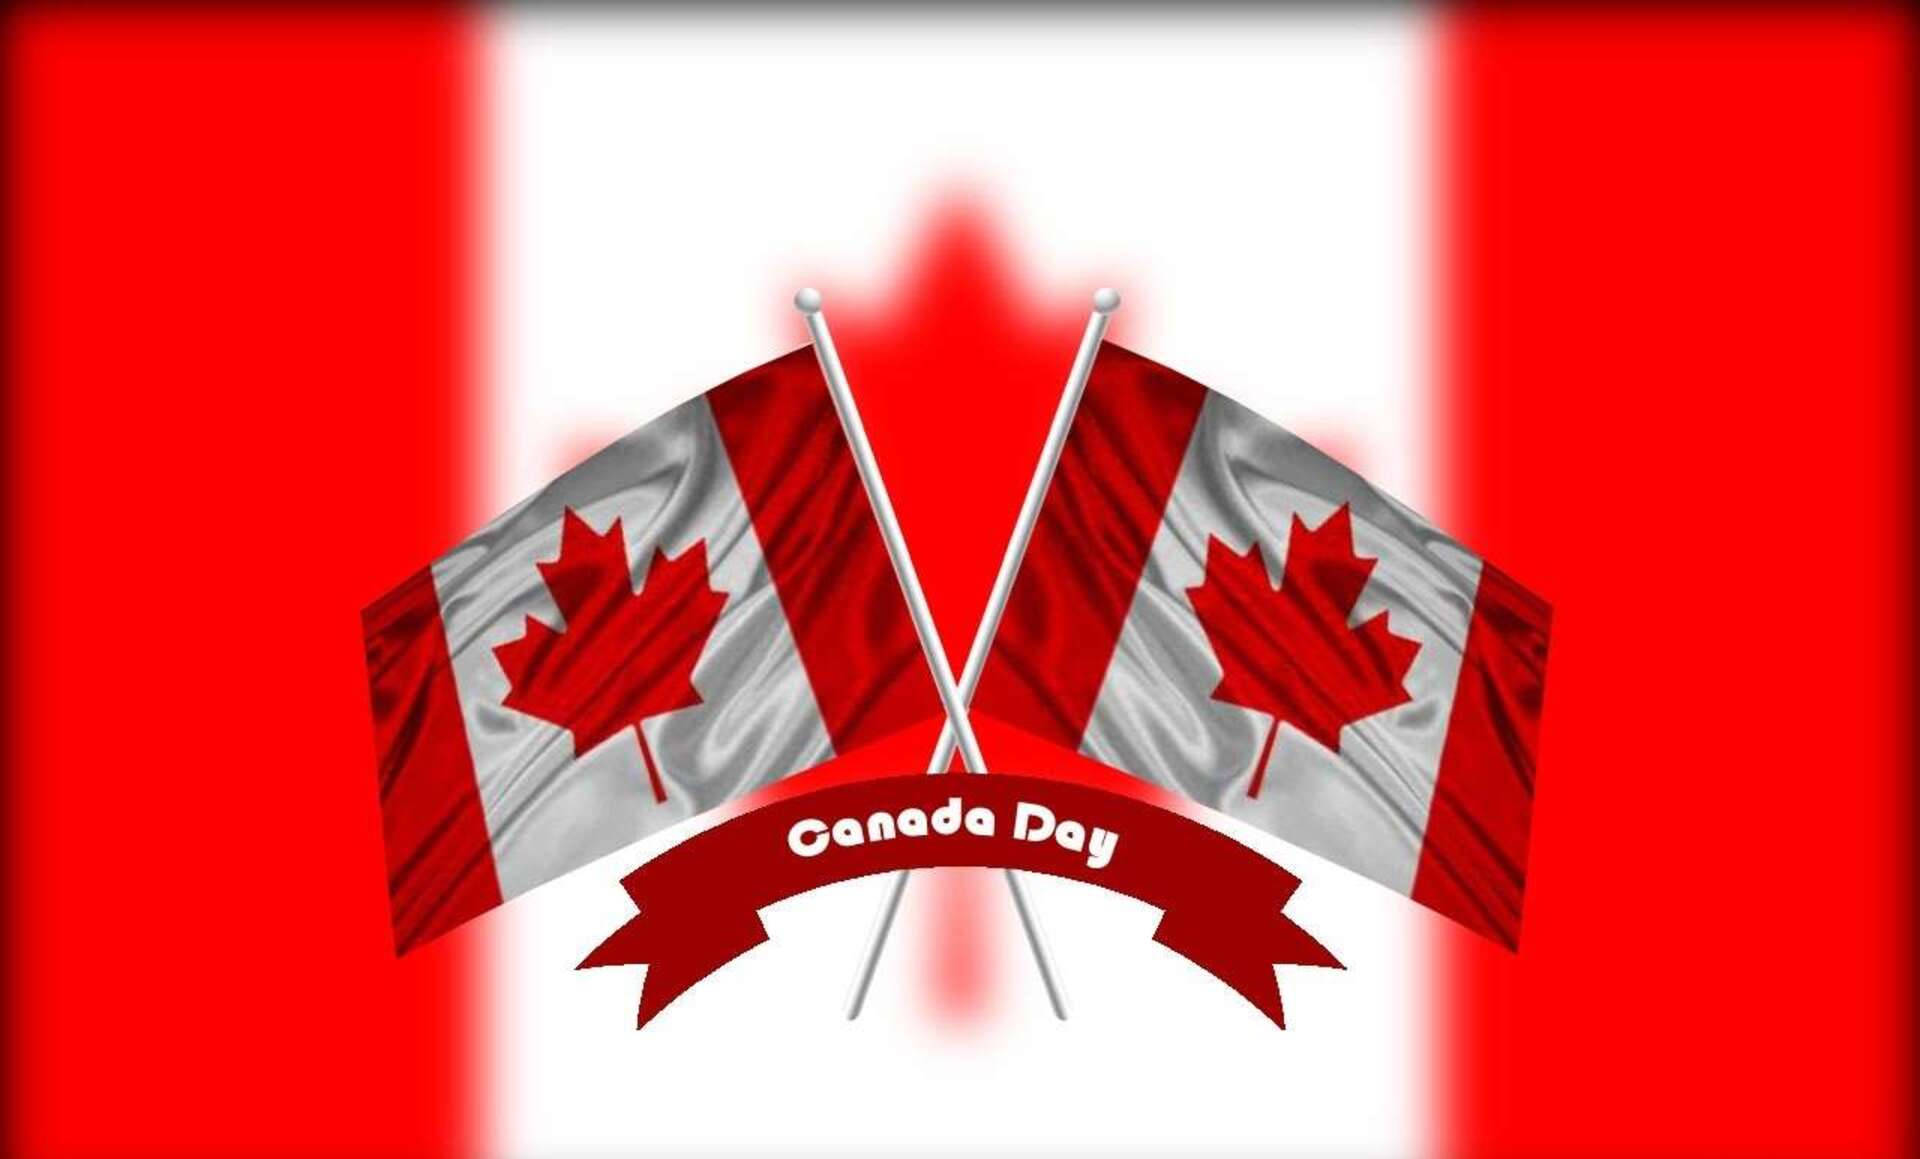 Kanadadagenkorsade Flaggor. Wallpaper